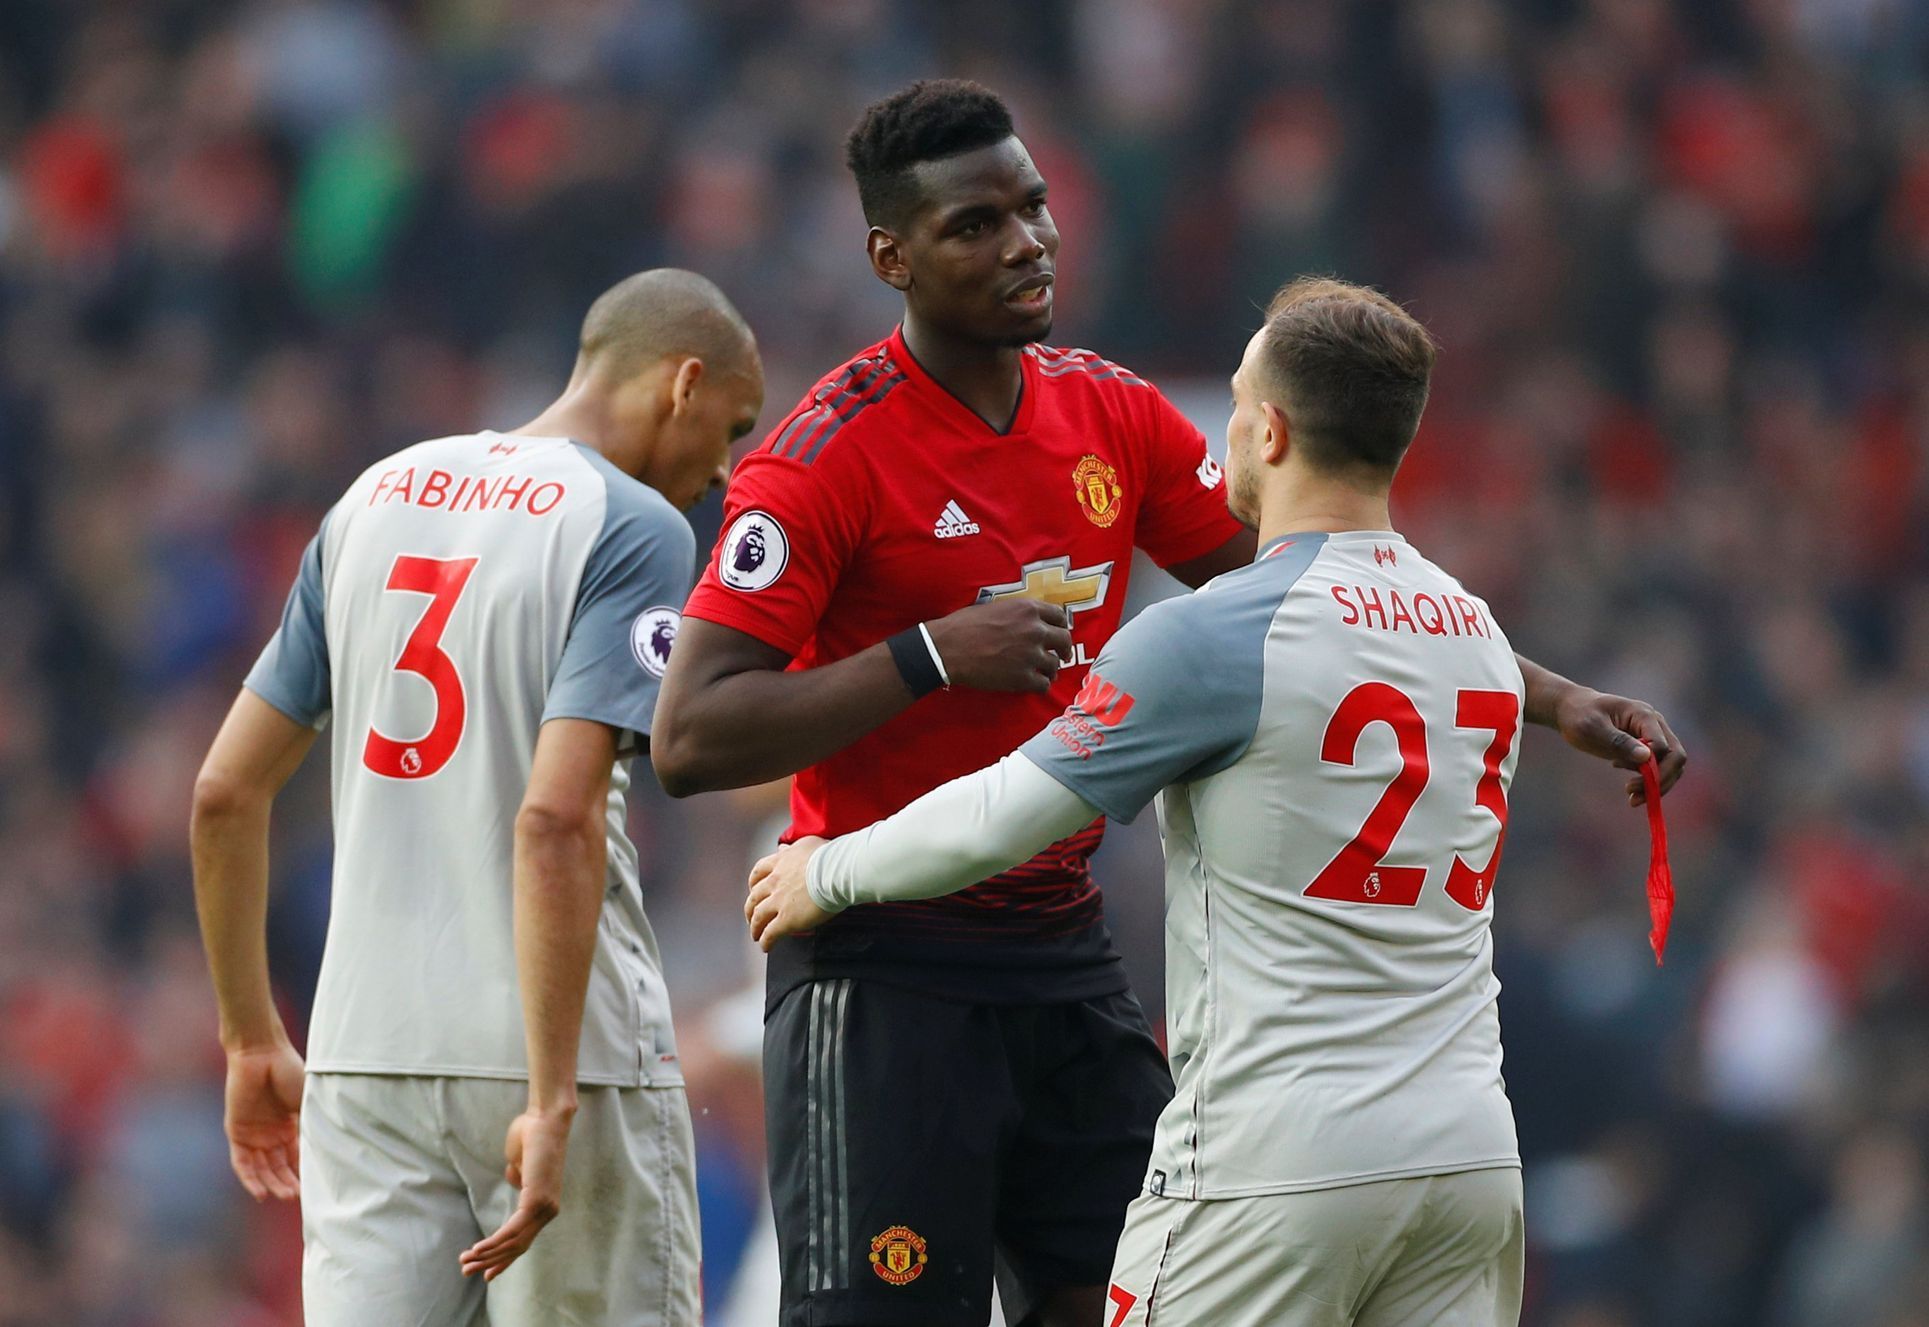 Anglická fotbalová liga 2018/19, Manchester United - Liverpool: Paul Pogba a Xherdan Shaqiri se zdraví po zápase.